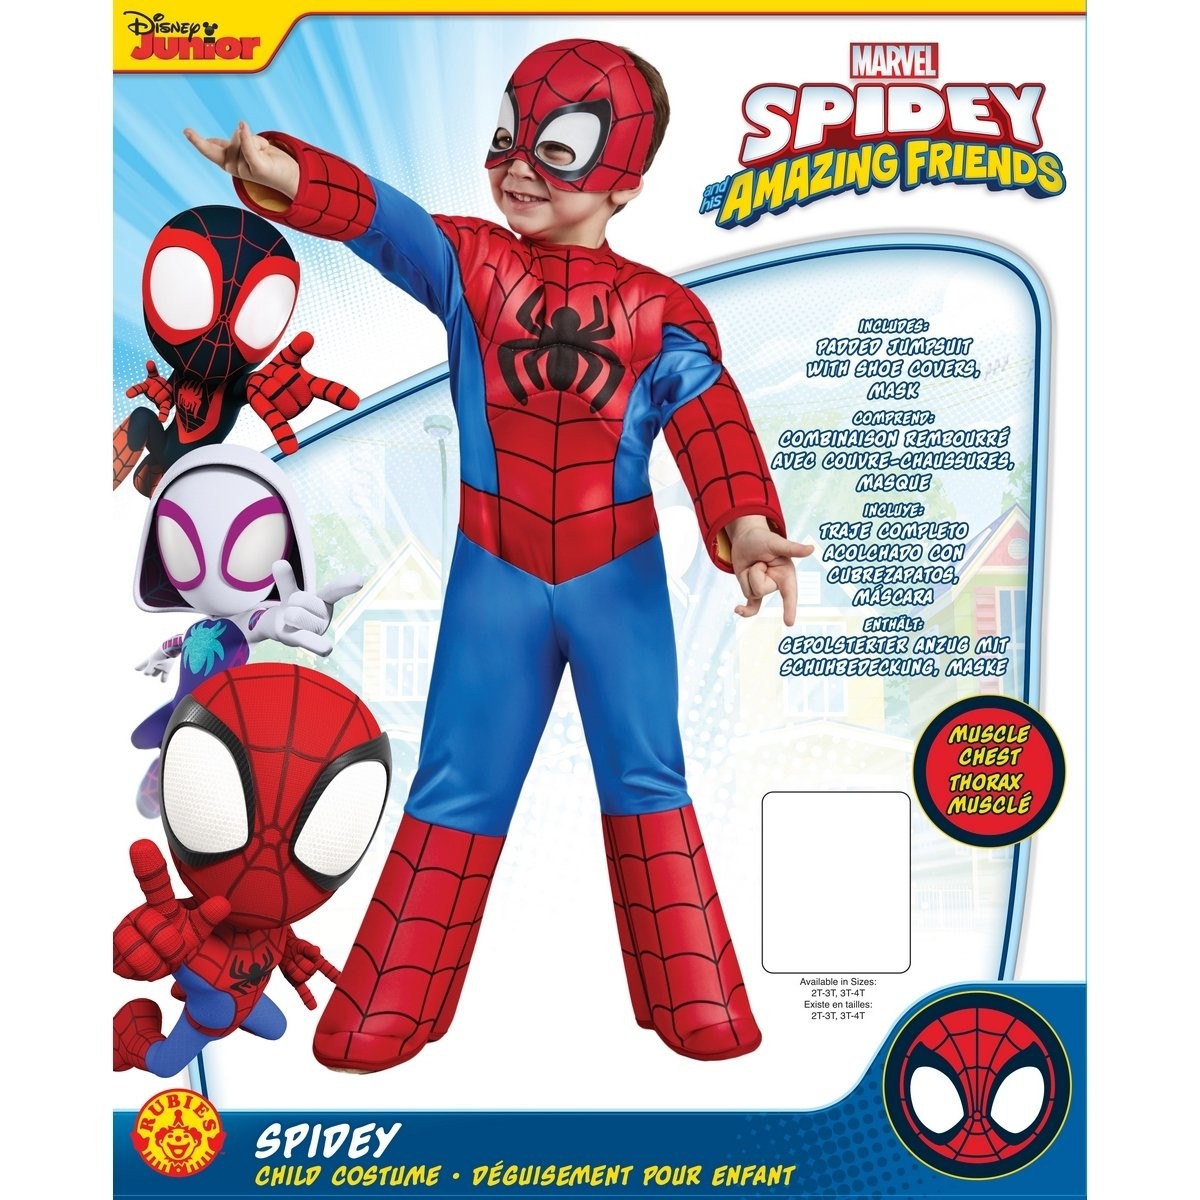 Spider-man deguisement - taille s - 3-4 ans, fetes et anniversaires